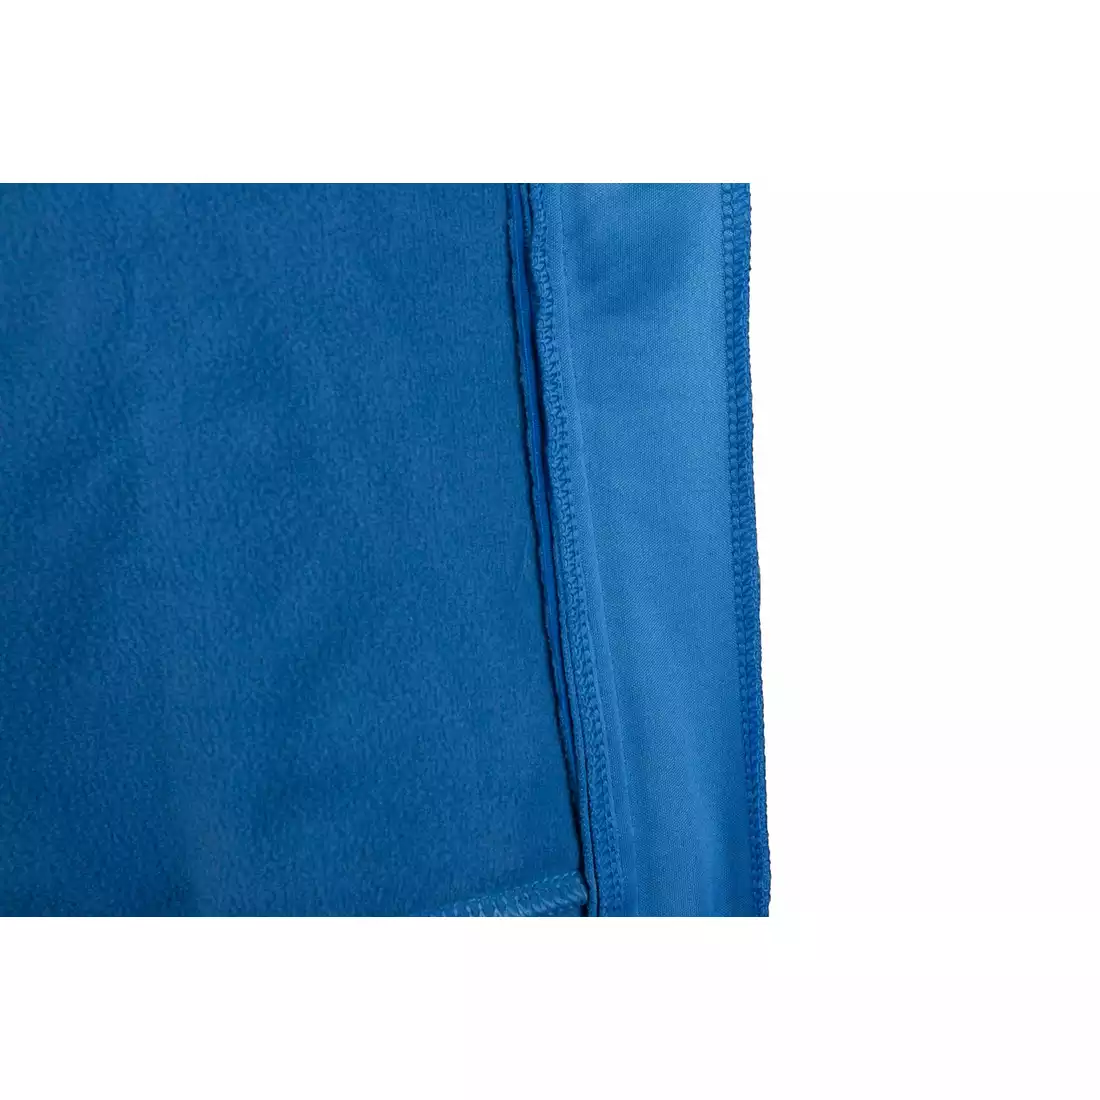 CROSSROAD ROCKFORD zimowa kurtka rowerowa, softshell, niebieska